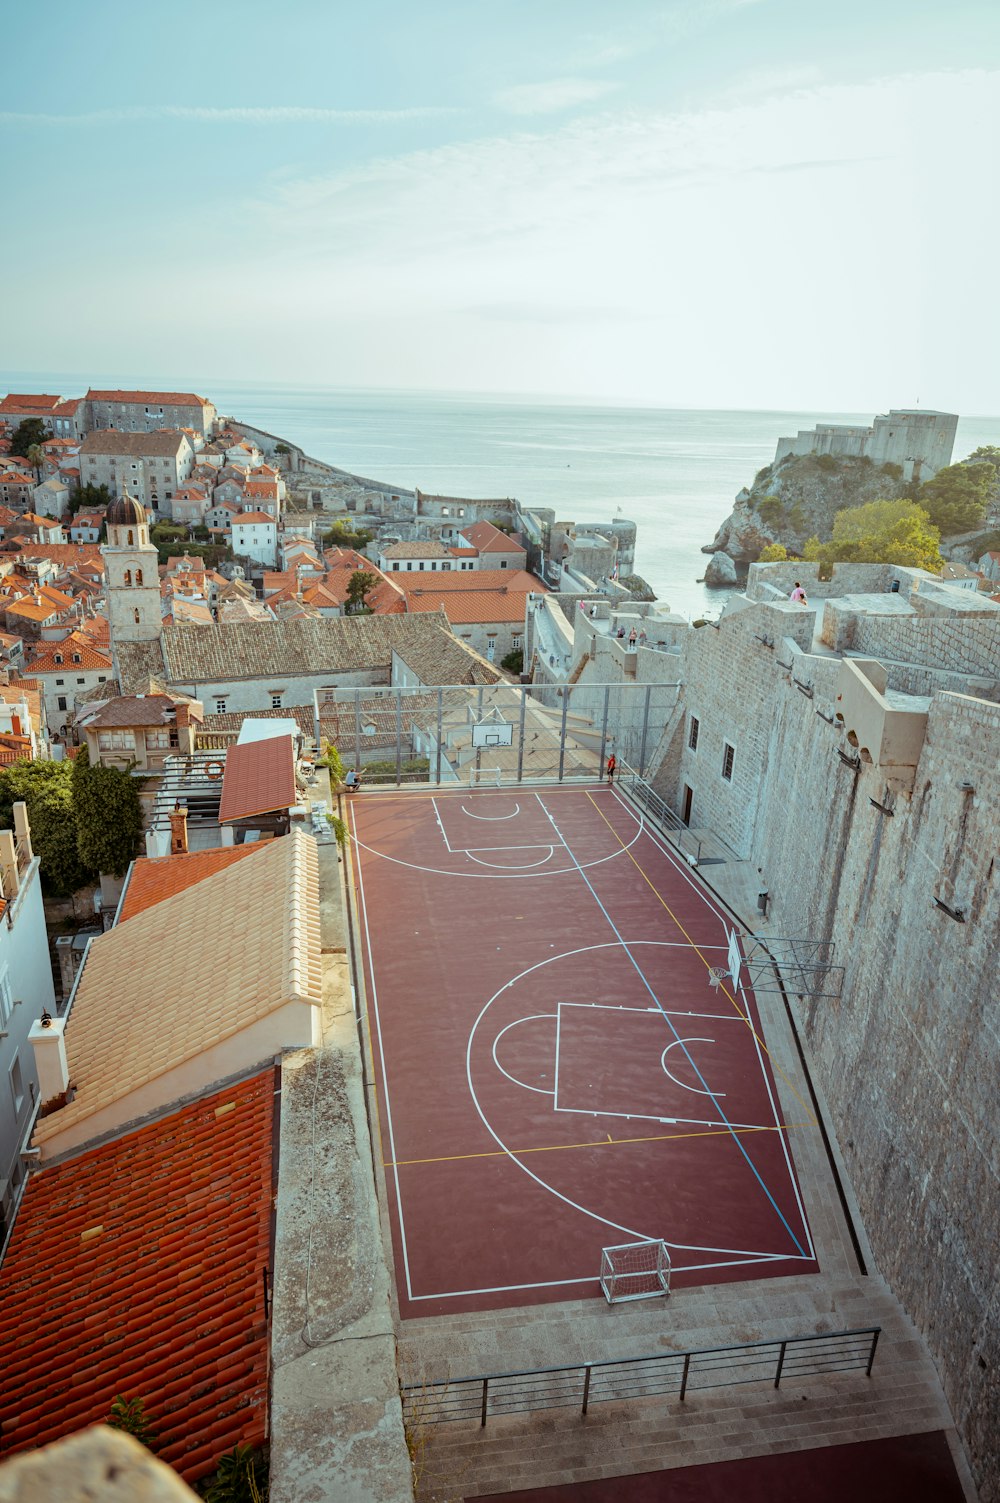 Una veduta aerea di un campo da basket in una città